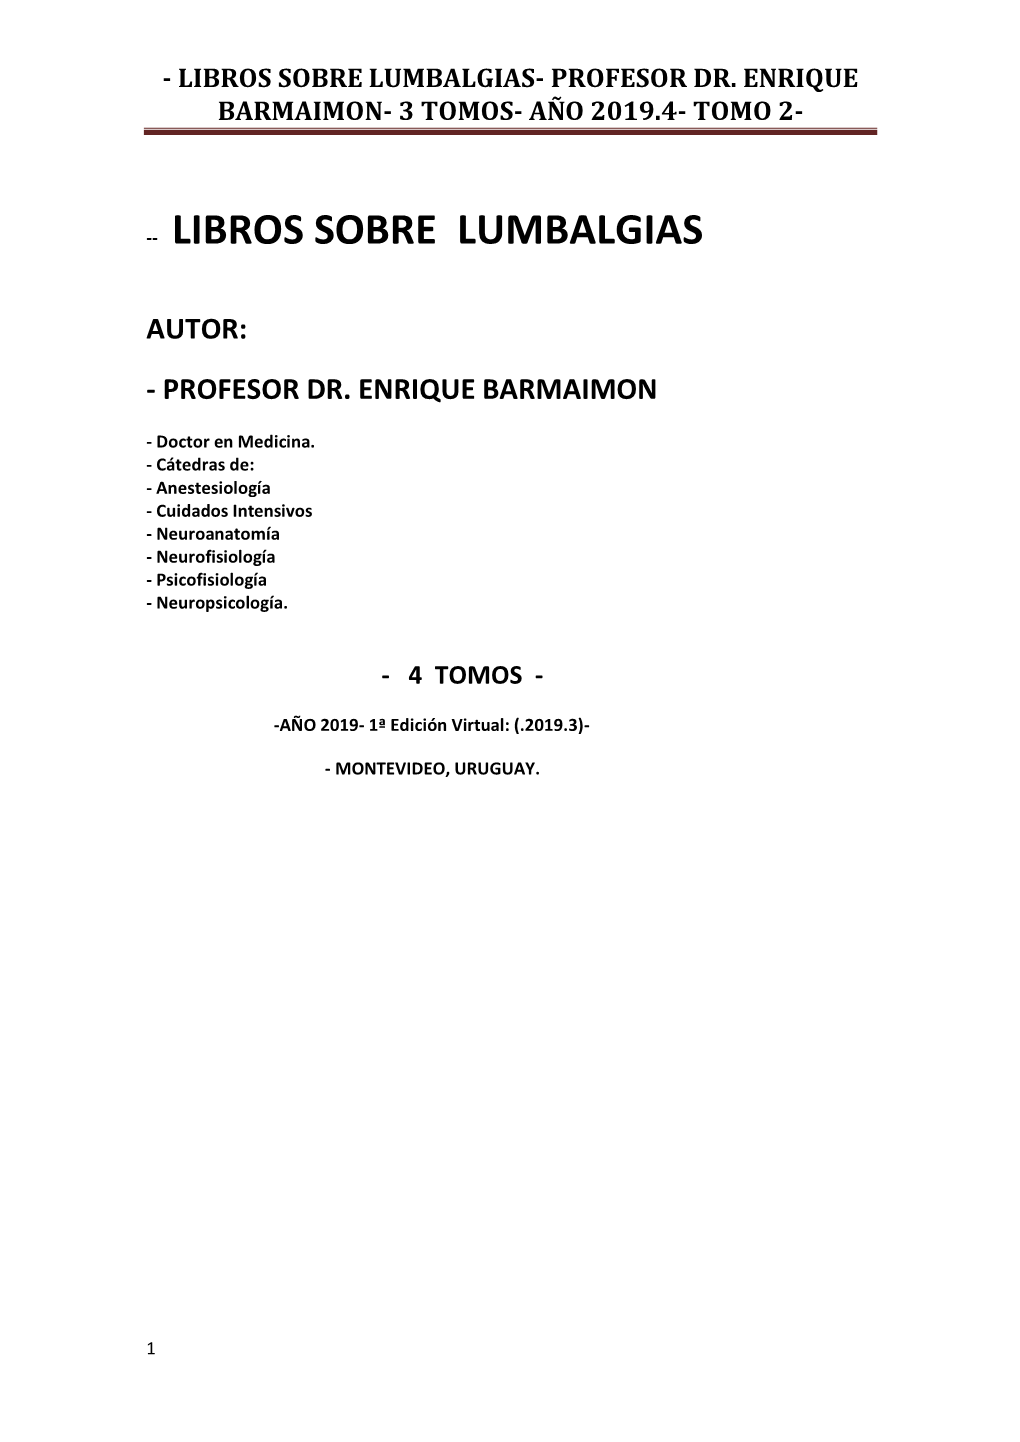 Libros Sobre Lumbalgias- Profesor Dr. Enrique Barmaimon- 3 Tomos- Año 2019.4- Tomo 2